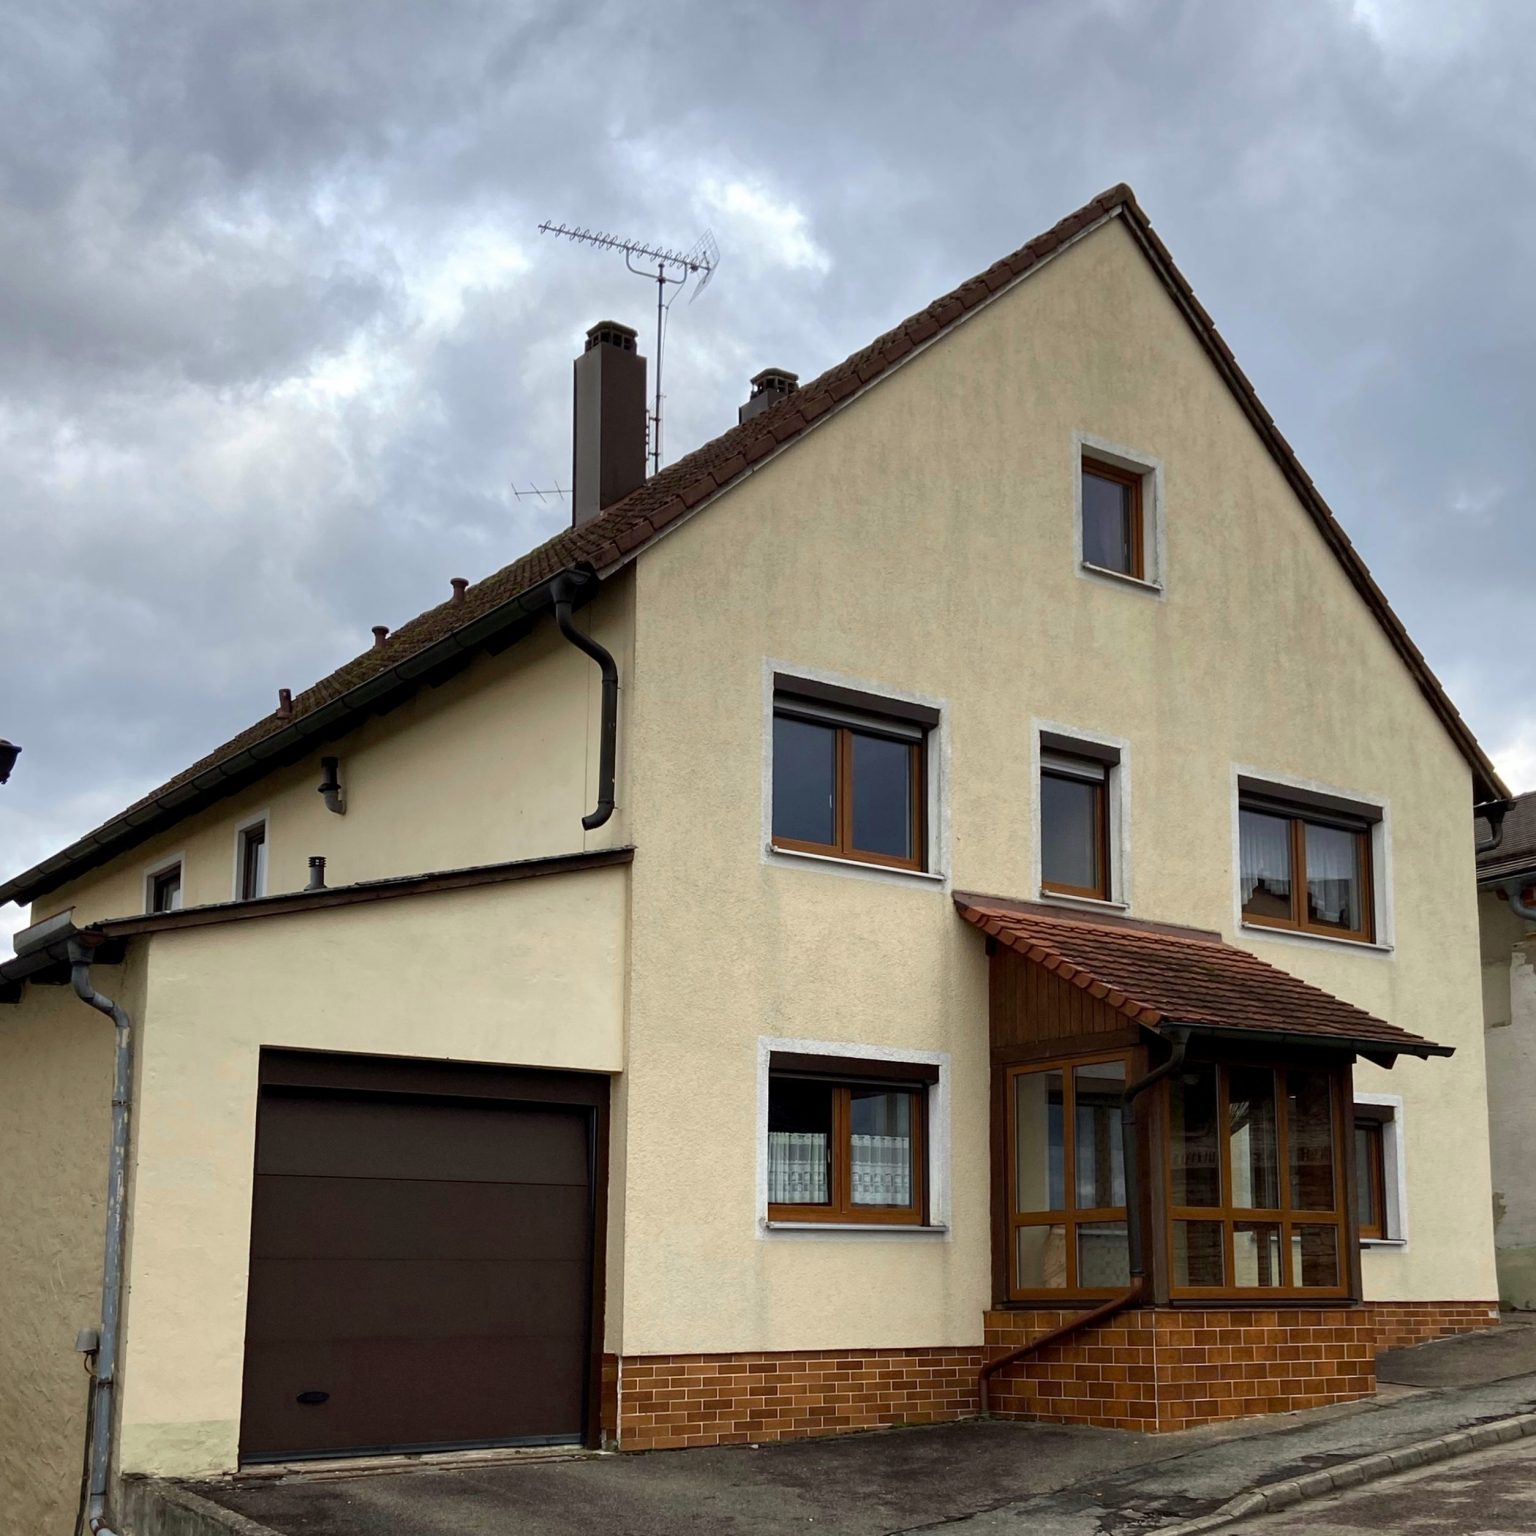 Schiller Immobilien steht für Verlässlichkeit, Kompetenz und höchste Kundenzufriedenheit in Weißenburg und Gunzenhausen.